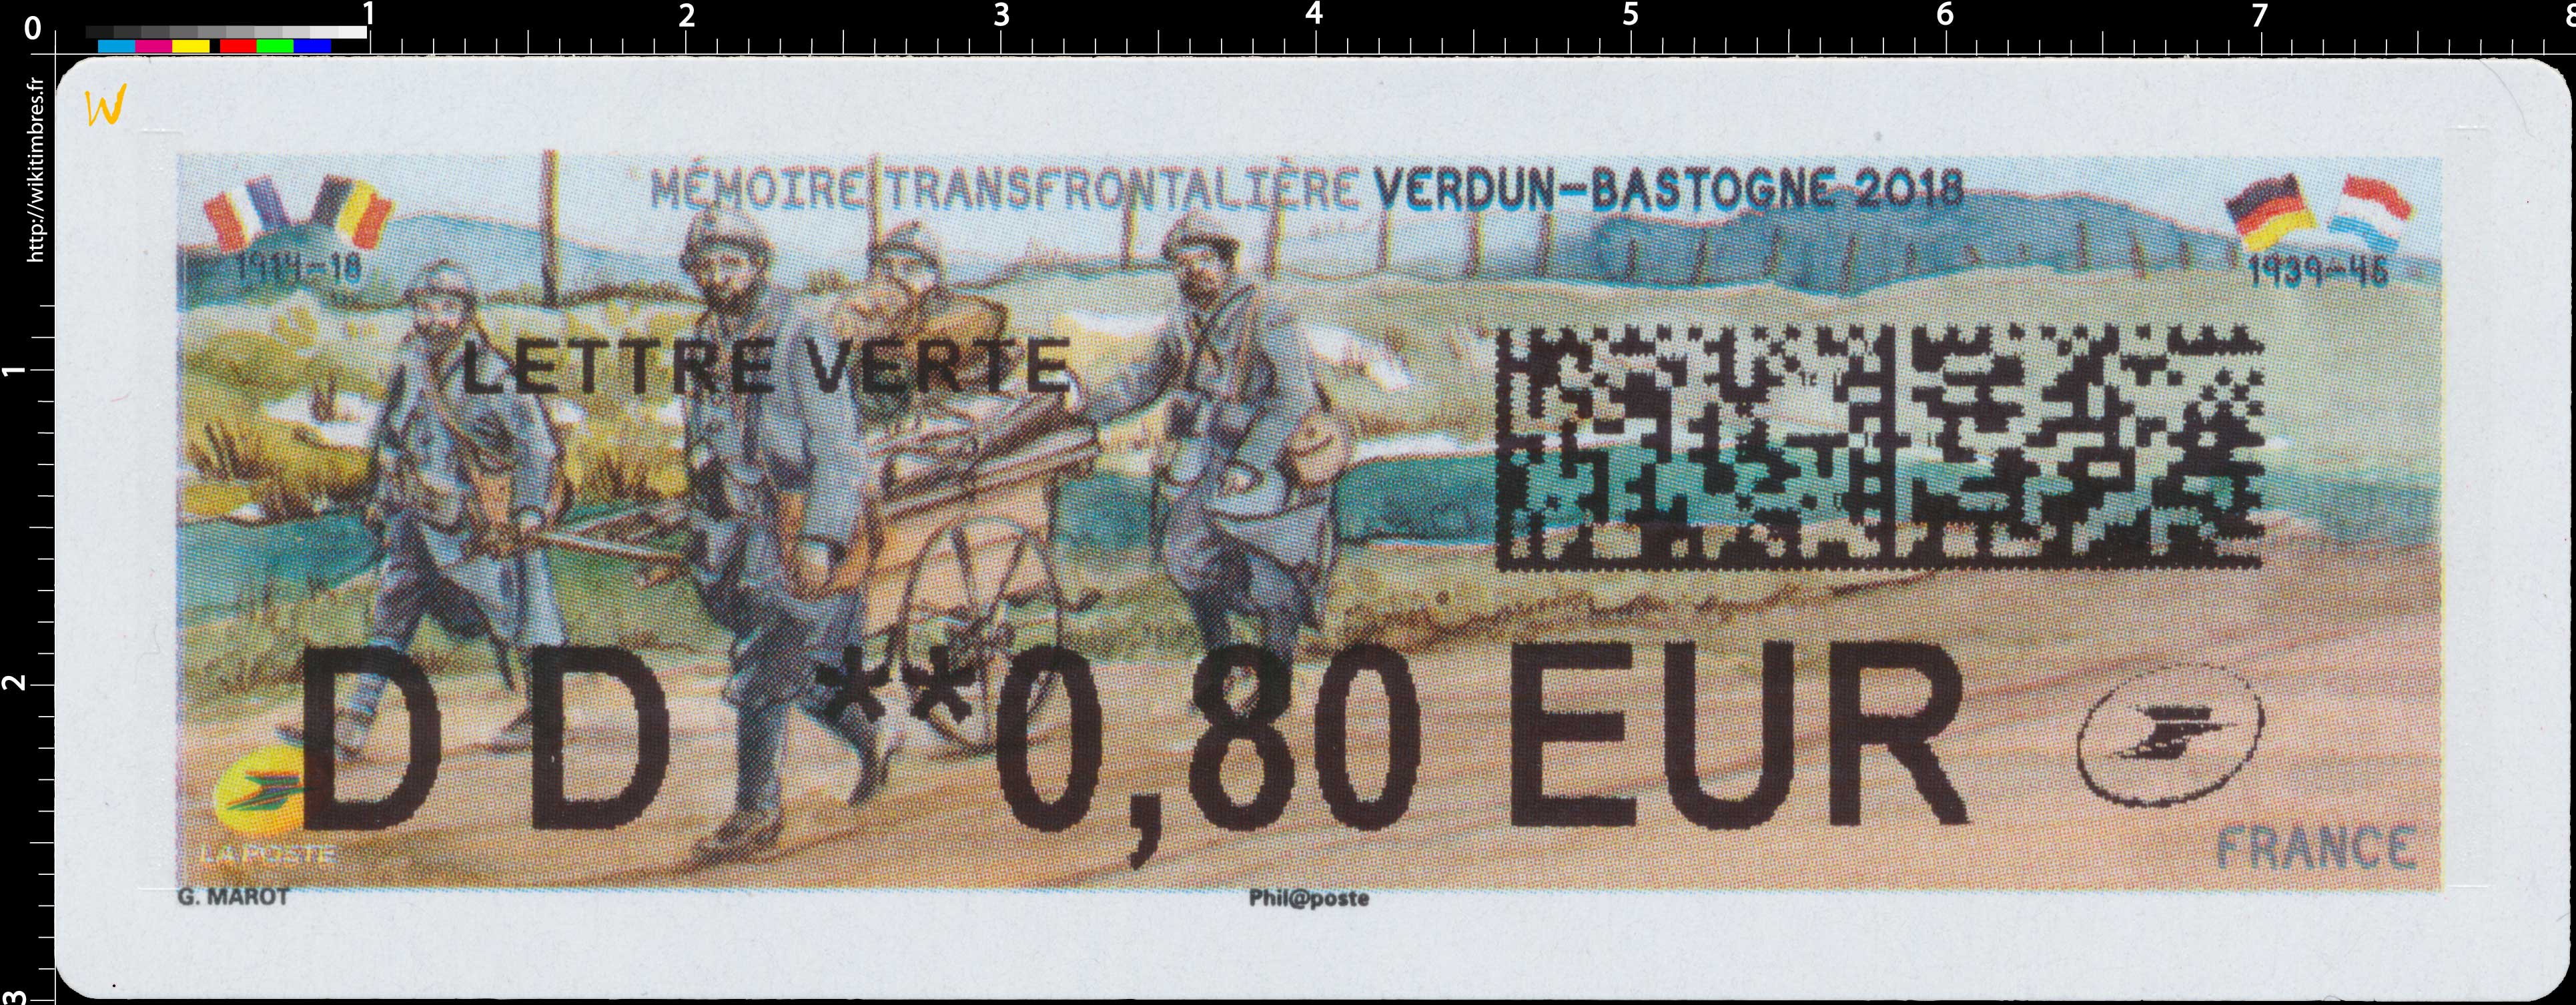 2018 Mémoire transfrontalière VERDUN-BASTOGNE 